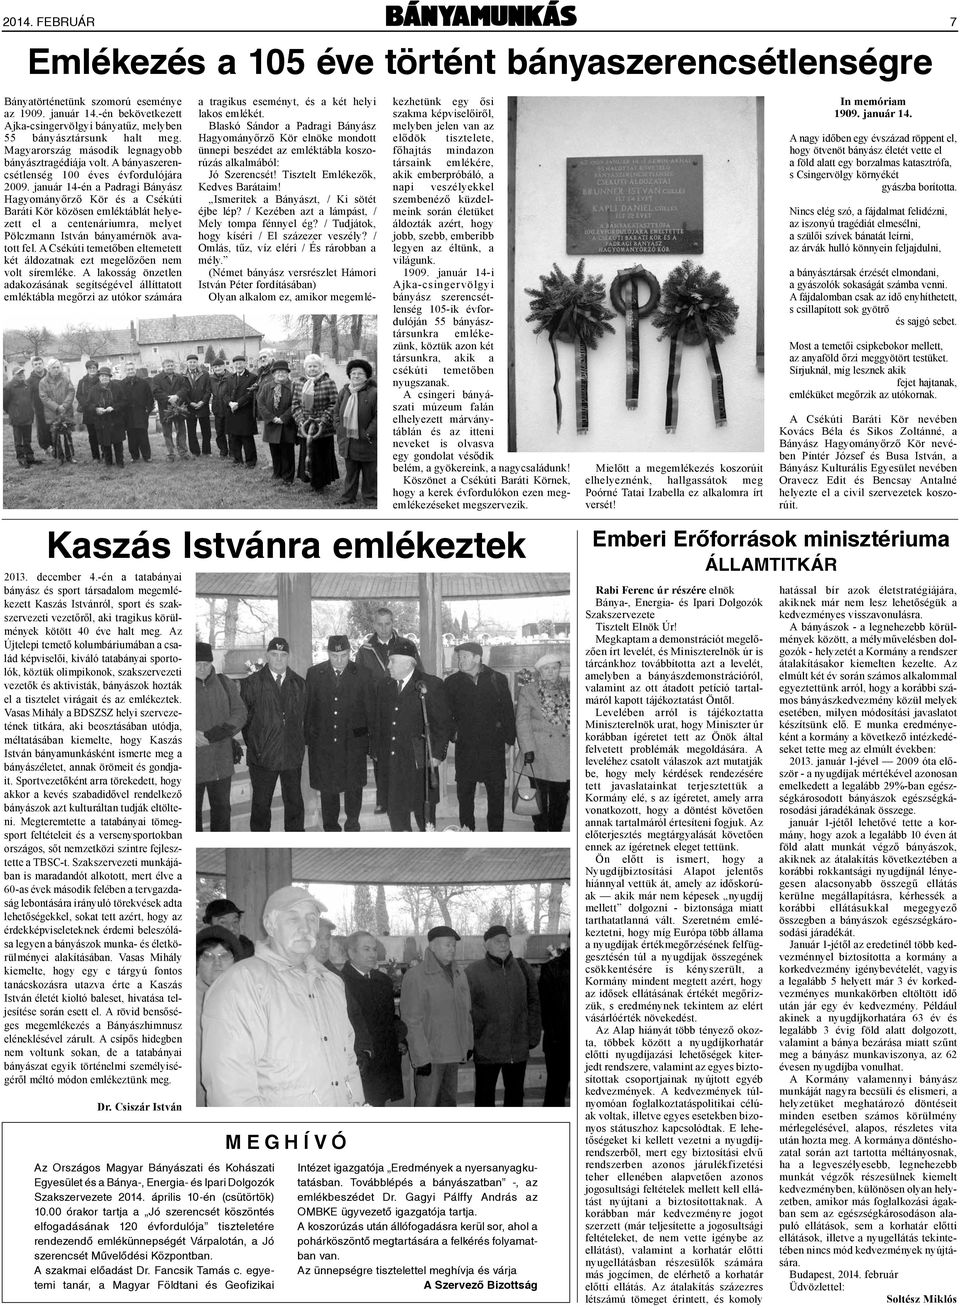 január 14-én a Padragi Bányász Hagyományőrző Kör és a Csékúti Baráti Kör közösen emléktáblát helyezett el a centenáriumra, melyet Pölczmann István bányamérnök avatott fel.